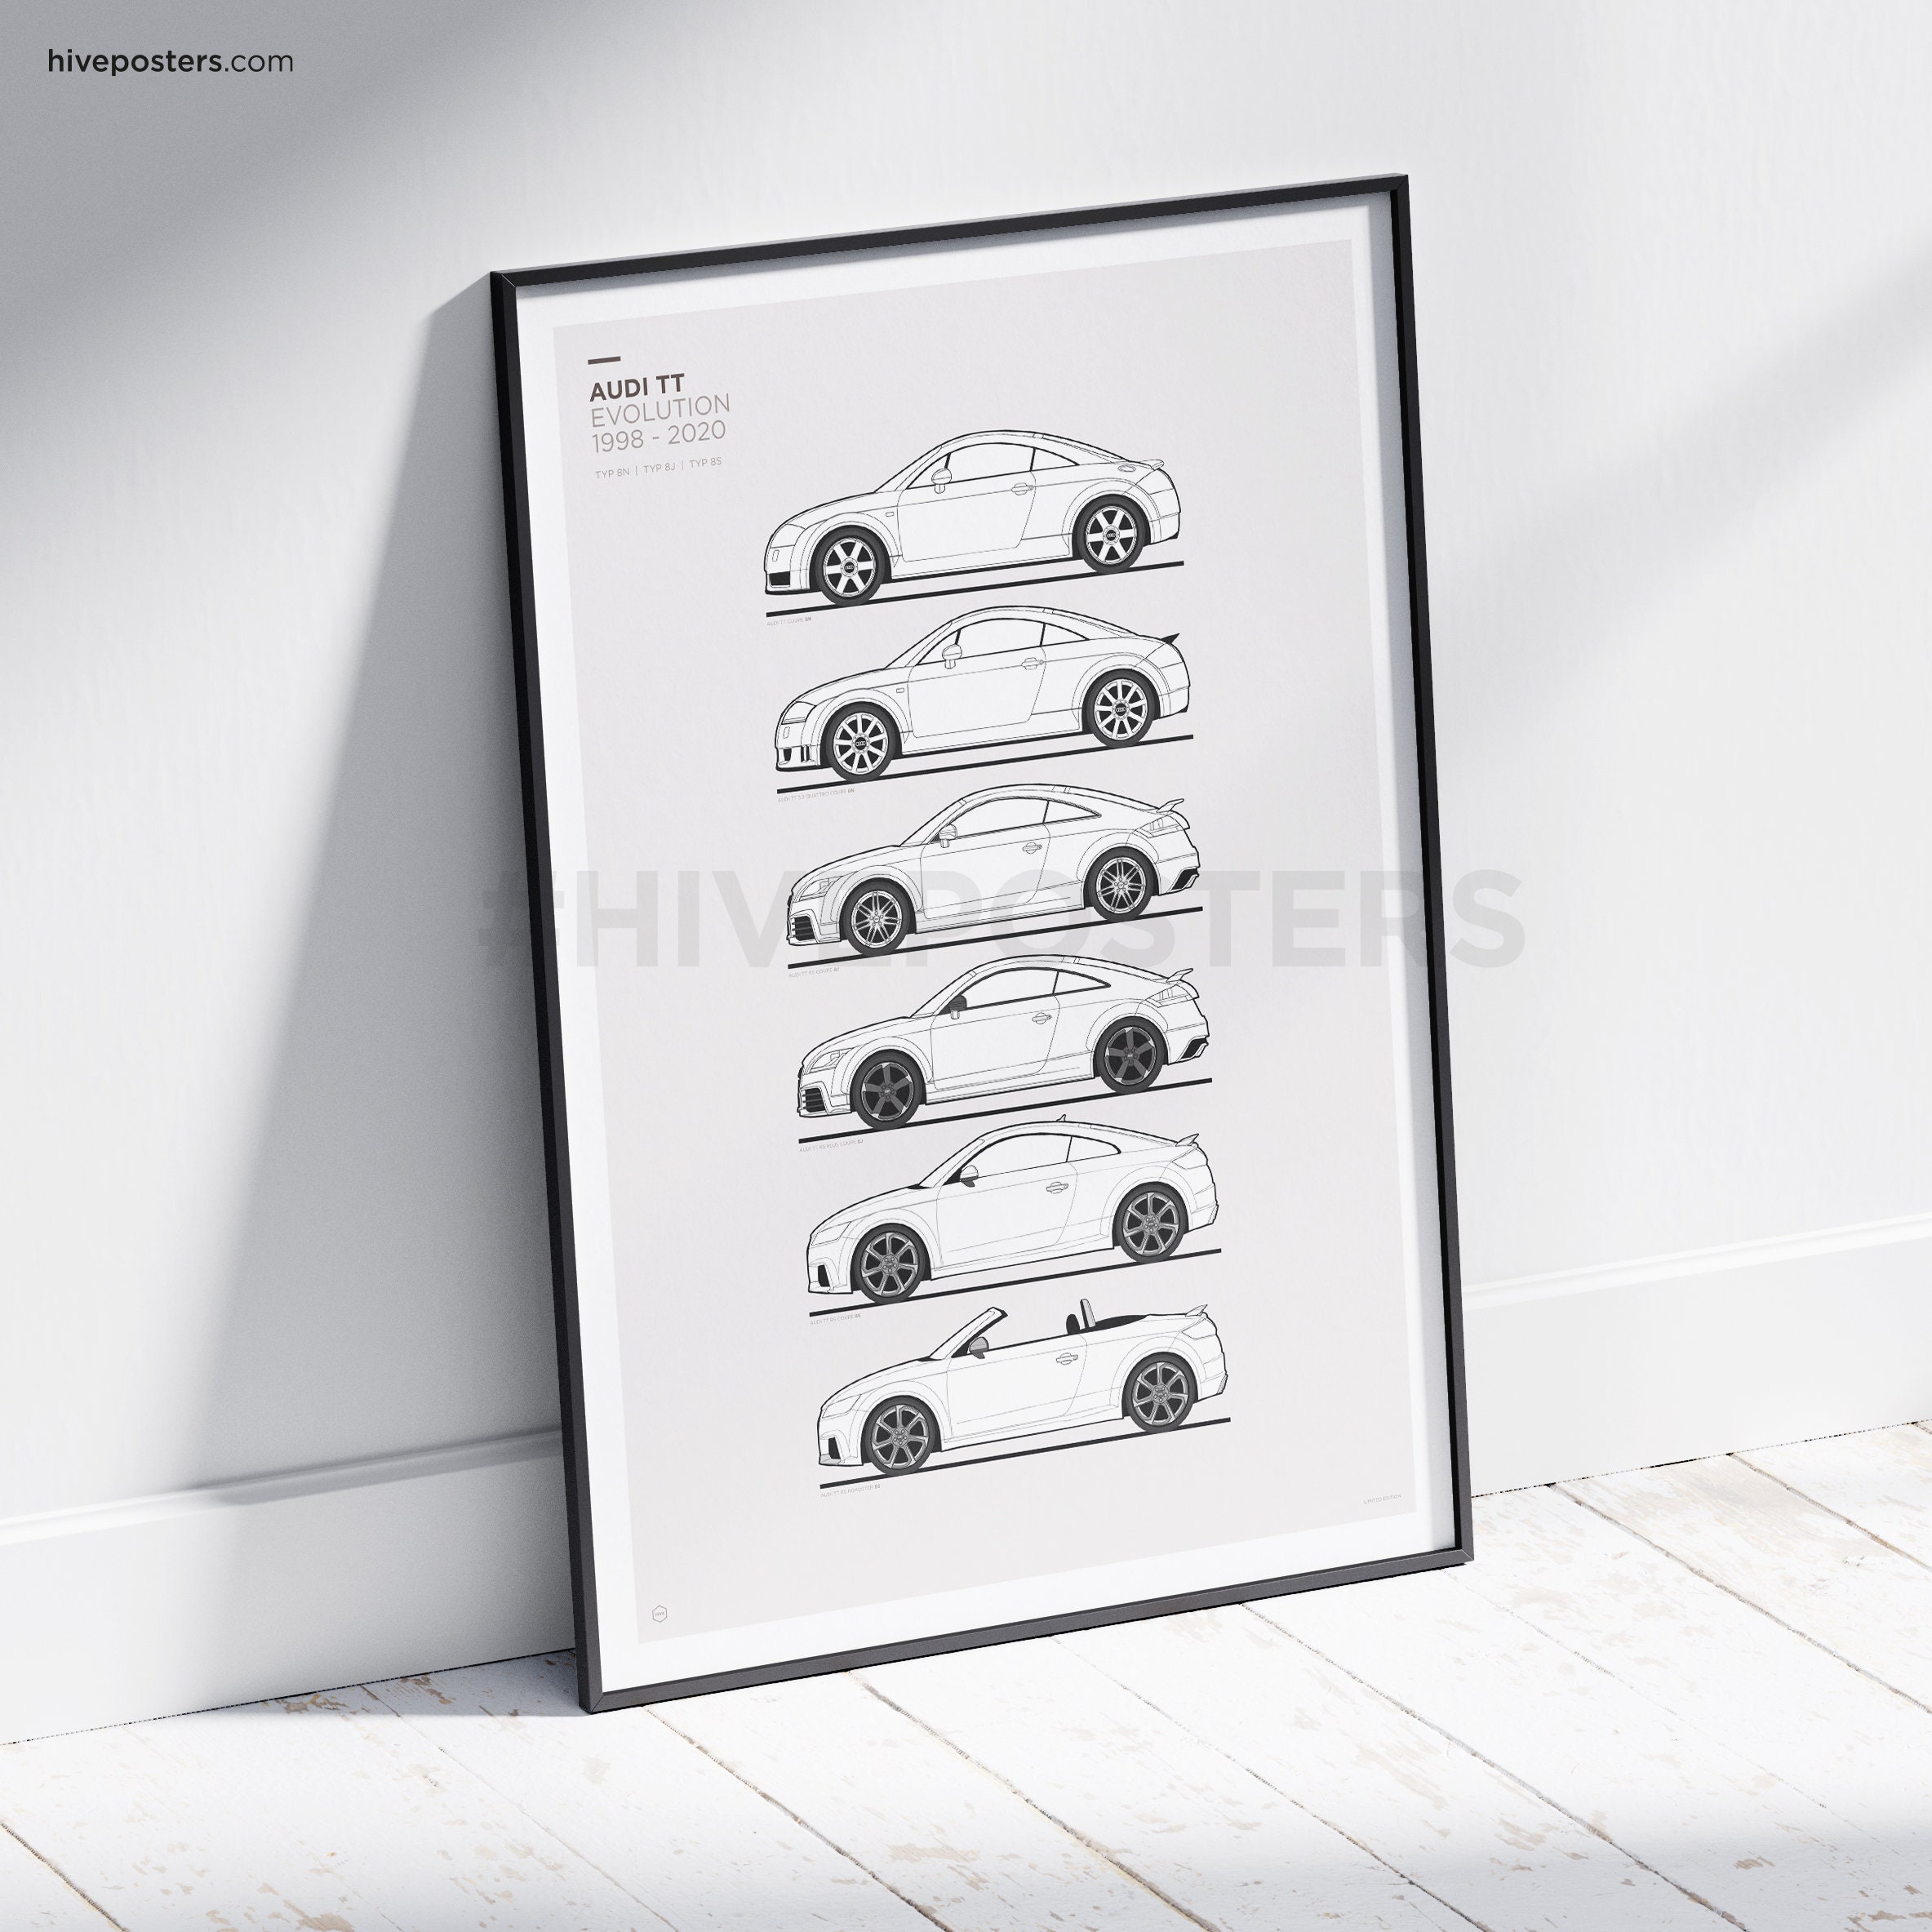 Audi TT Inspired Car Poster, Audi TT Evolution Print Featuring Models: 8J,  8N, 8S. Home Decor, Kids Room Decor, Gift Idea. unframed 